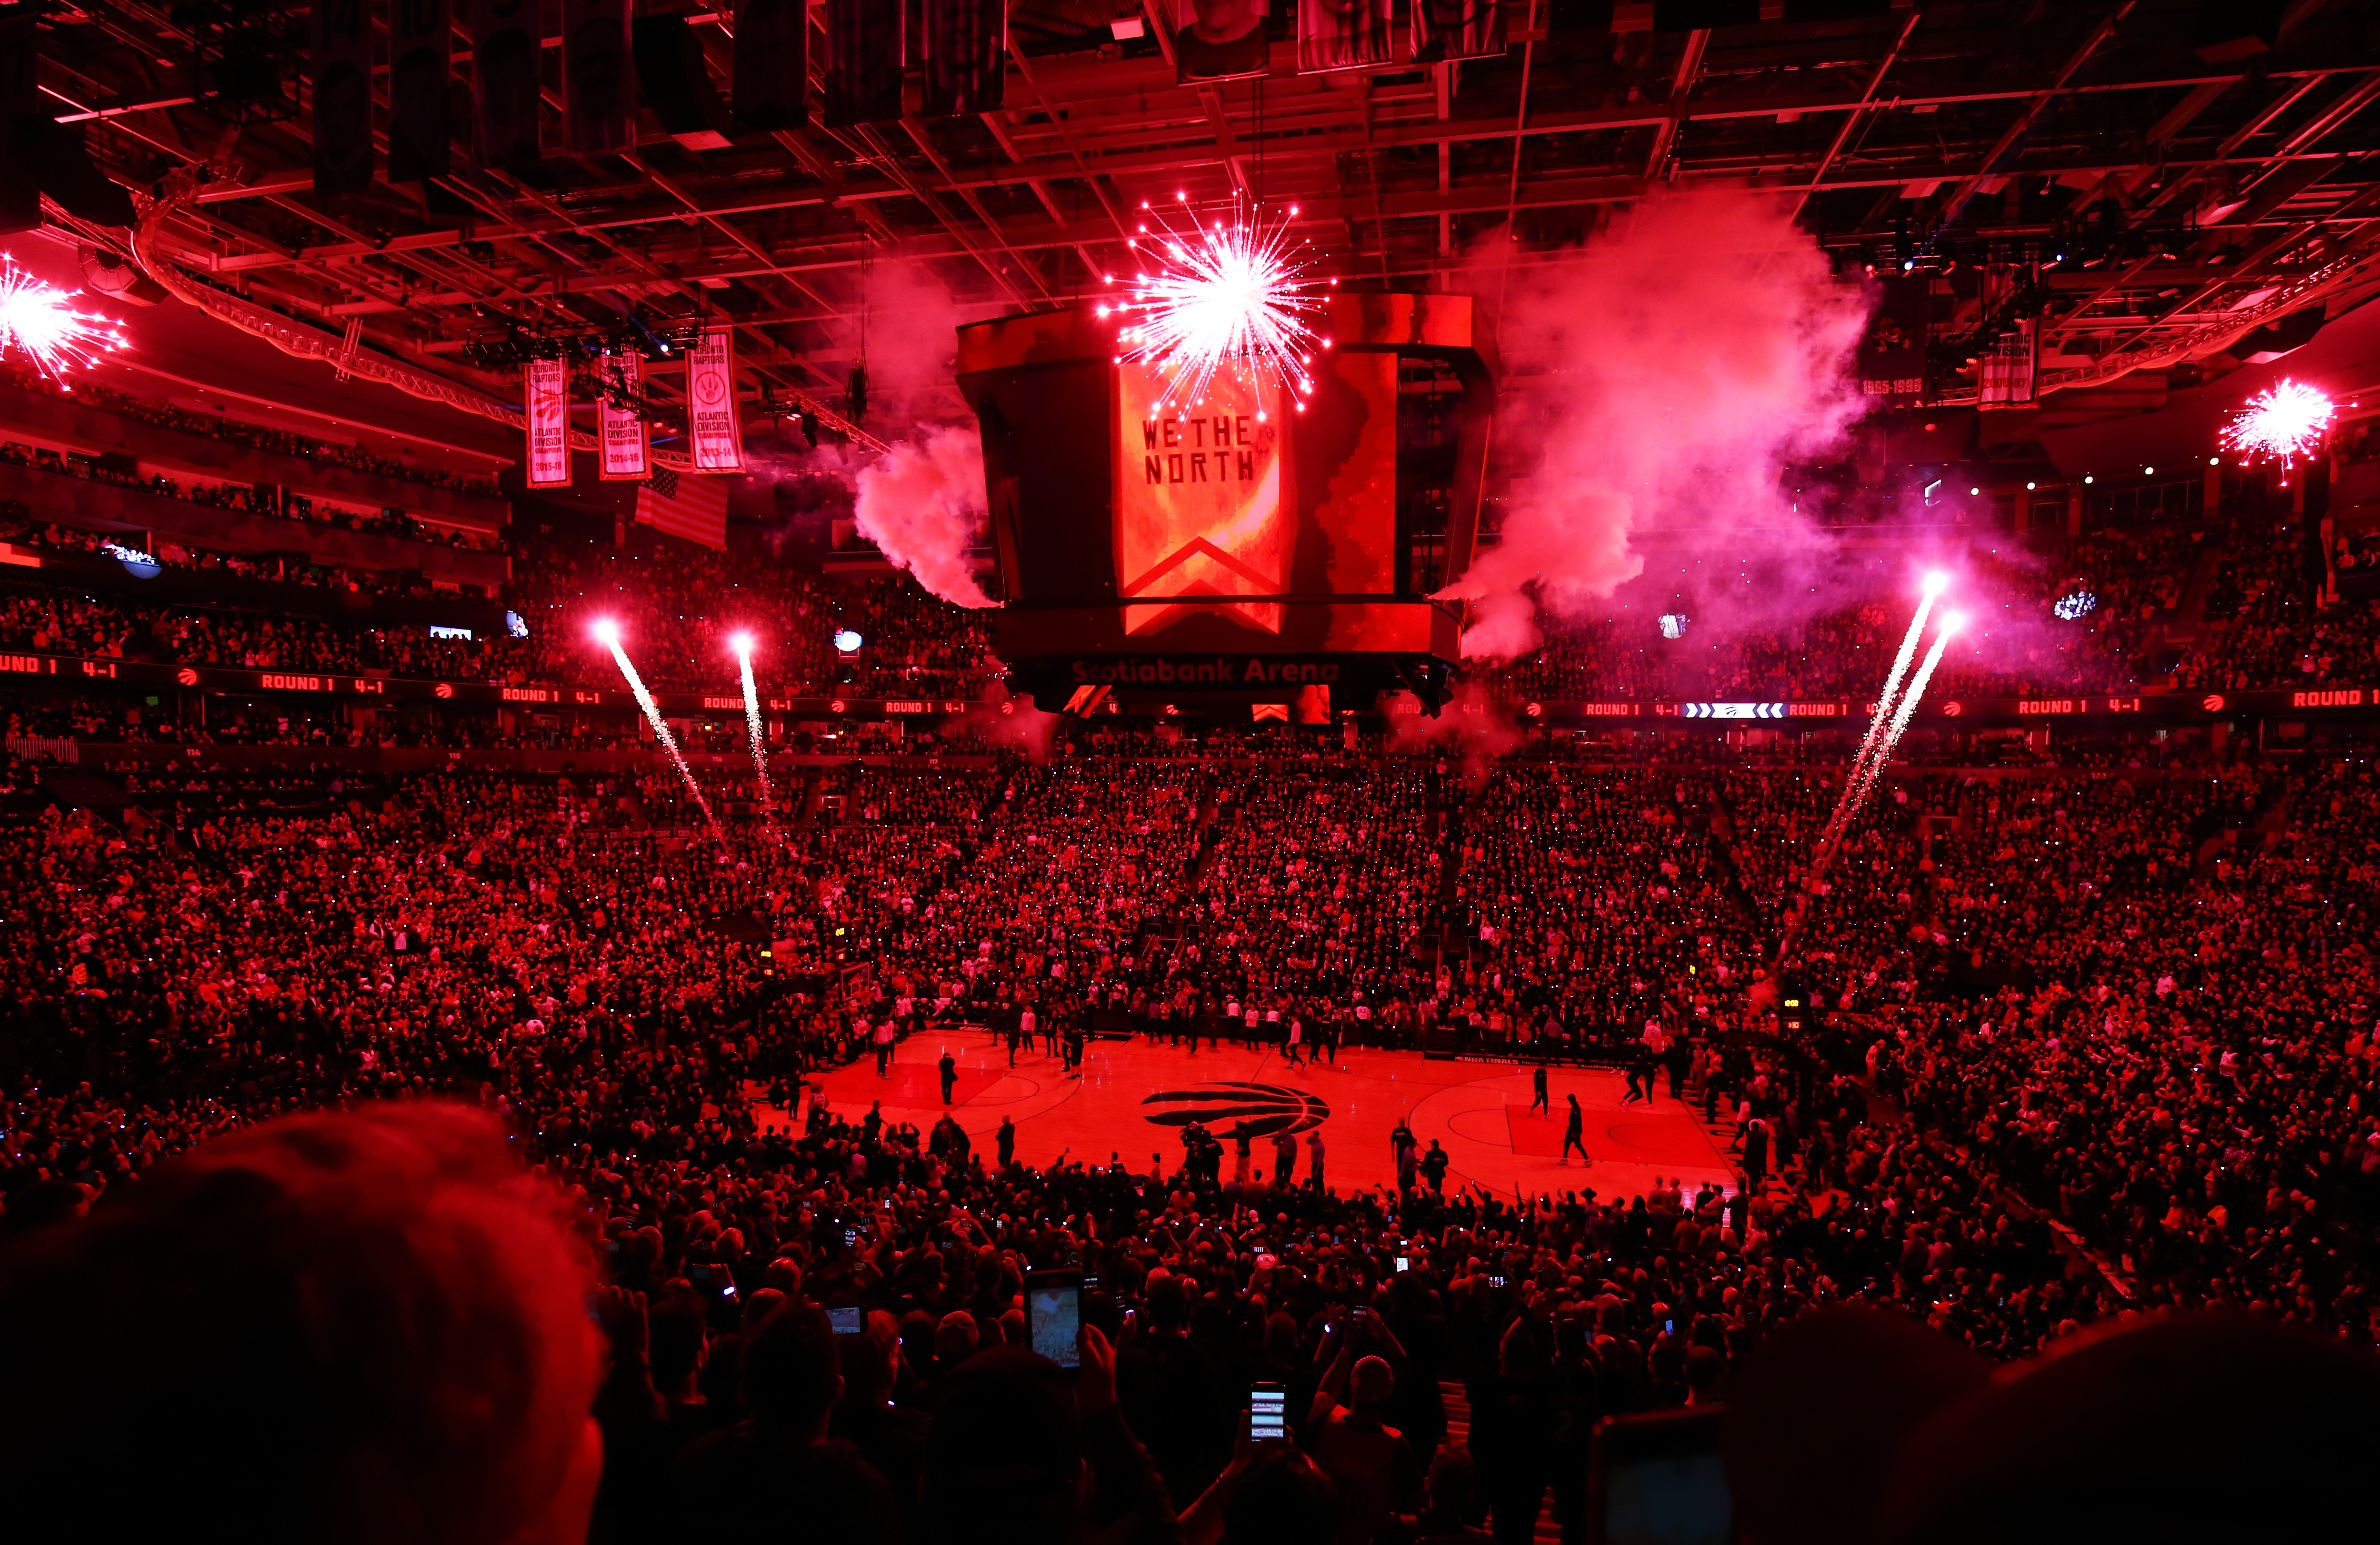 NBA: Toronto Raptors start 2020-21 season playing in Florida temporarily